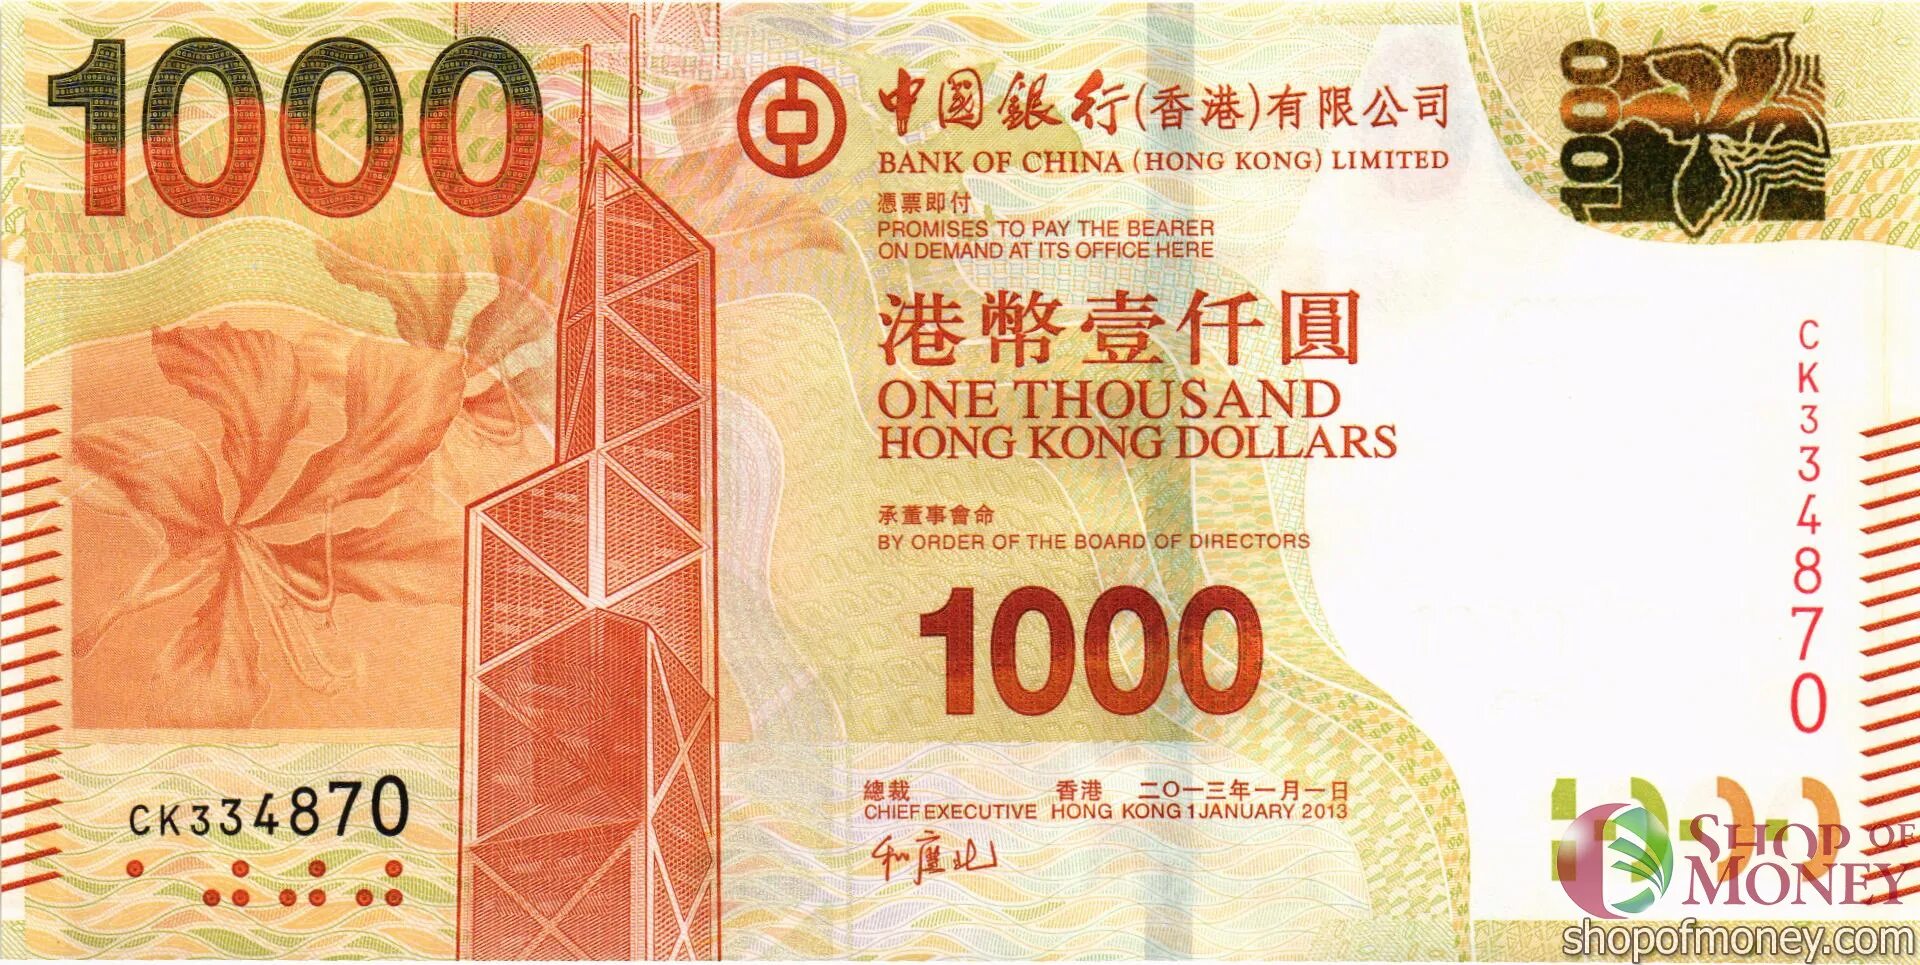 1000 банков доллар купить. 1000 Долларов Гонконг Bank of China Limited. Купюры Гонконга. 1000 Гонконгских долларов купюра. Гонконгский доллар купюры.